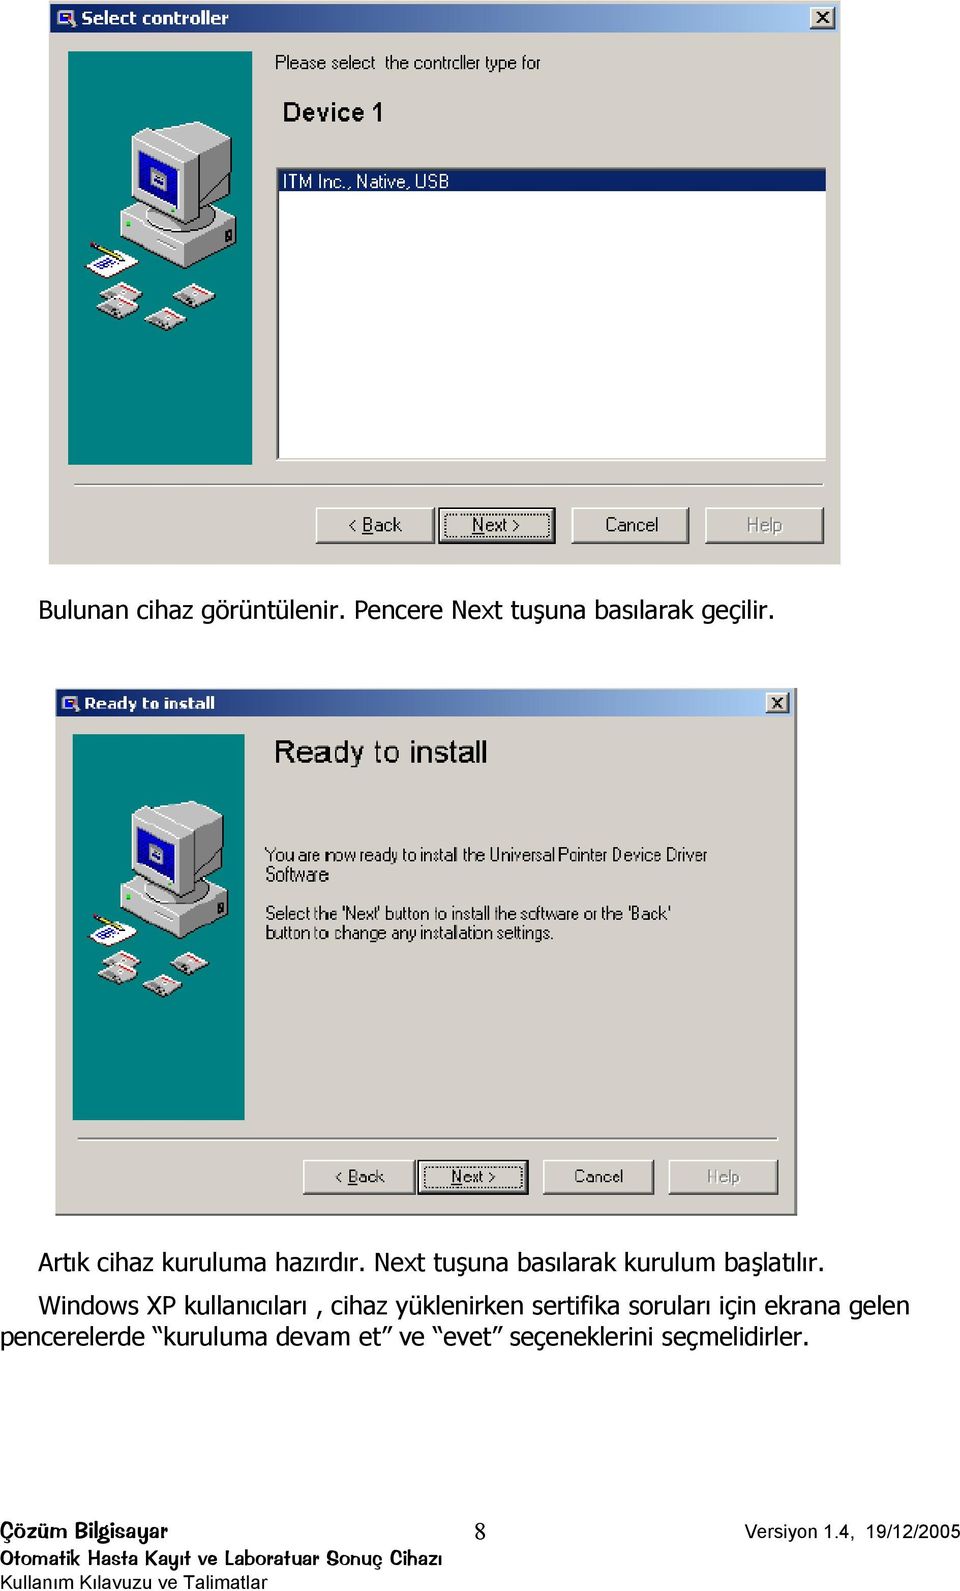 Windows XP kullanıcıları, cihaz yüklenirken sertifika soruları için ekrana